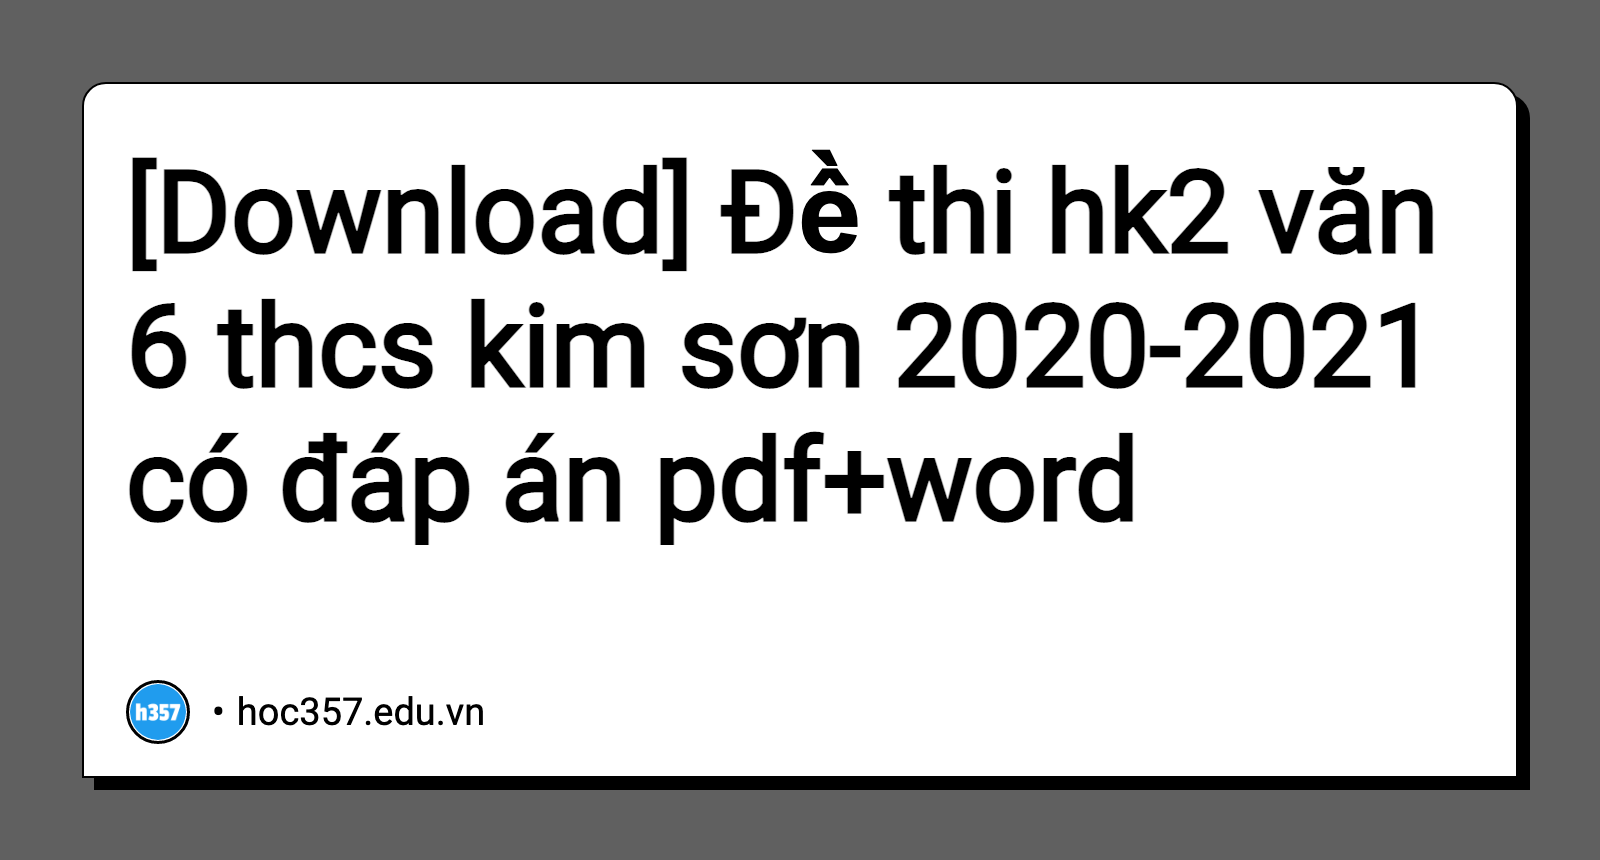 Hình minh họa Đề thi hk2 văn 6 thcs kim sơn 2020-2021 có đáp án